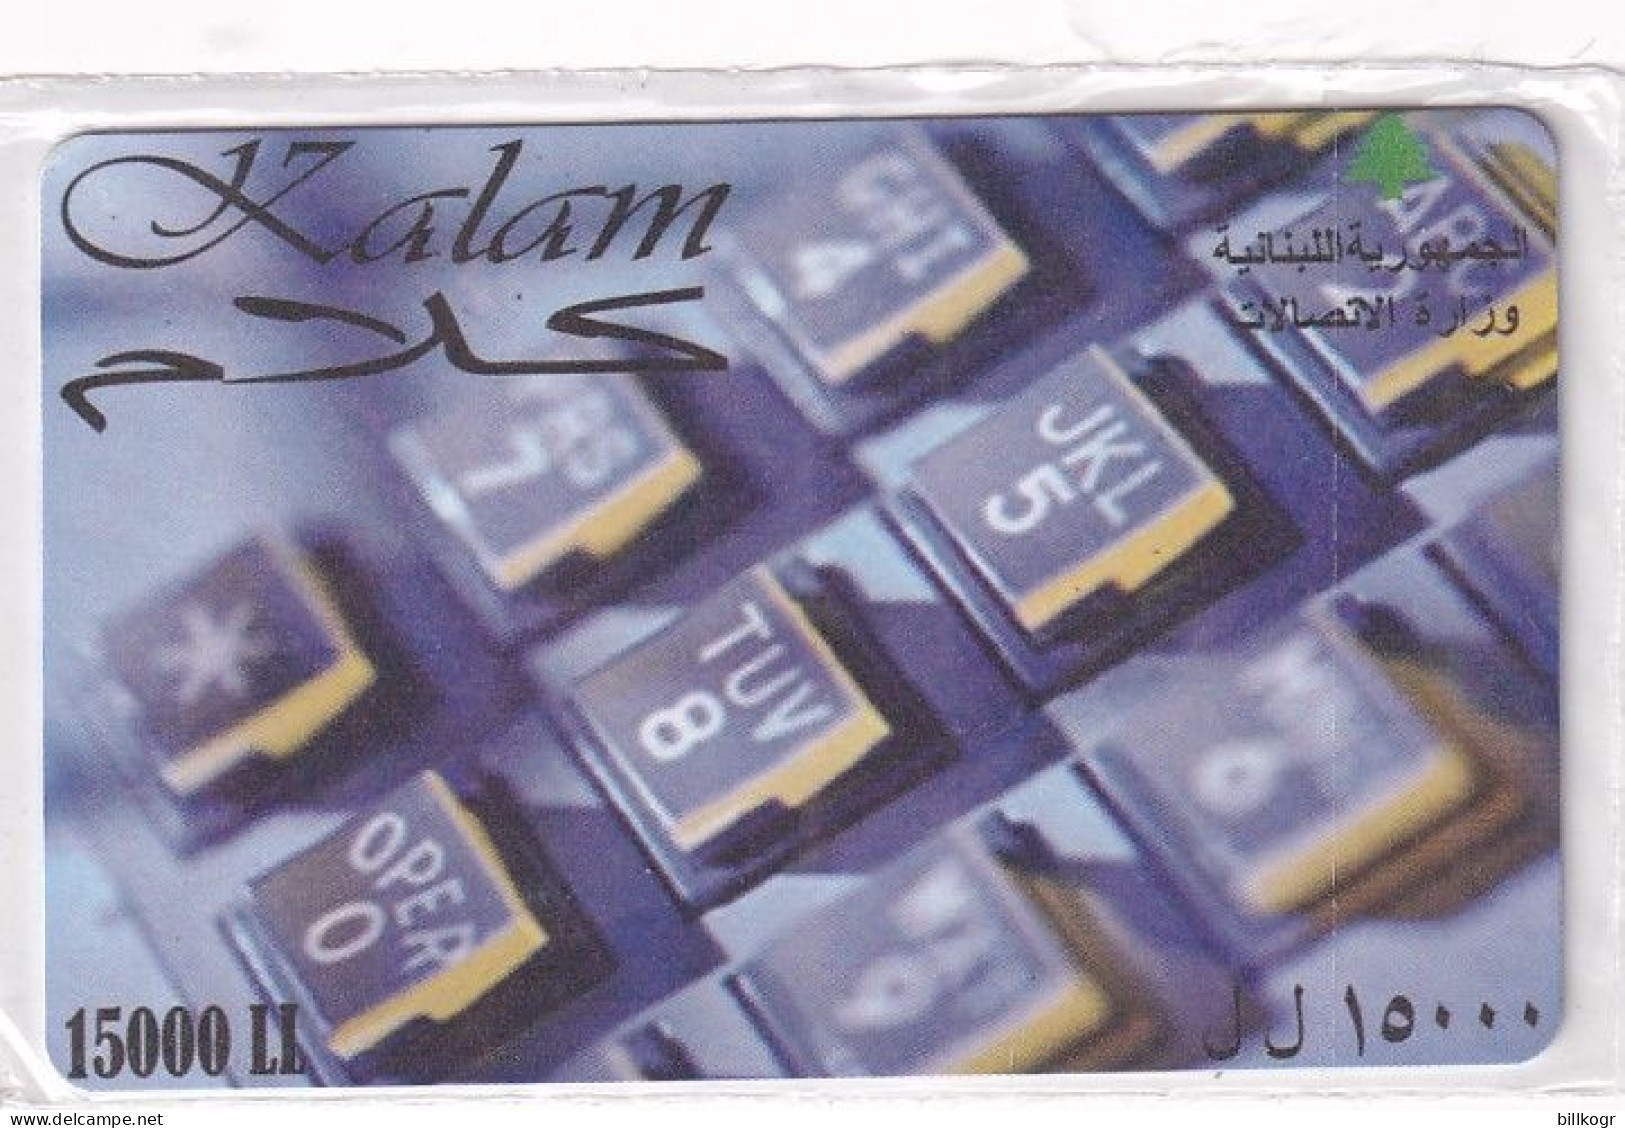 LEBANON - Kalam Prepaid Card 15000LL, CN : 1000, Exp.date 31/12/05, Mint - Libano